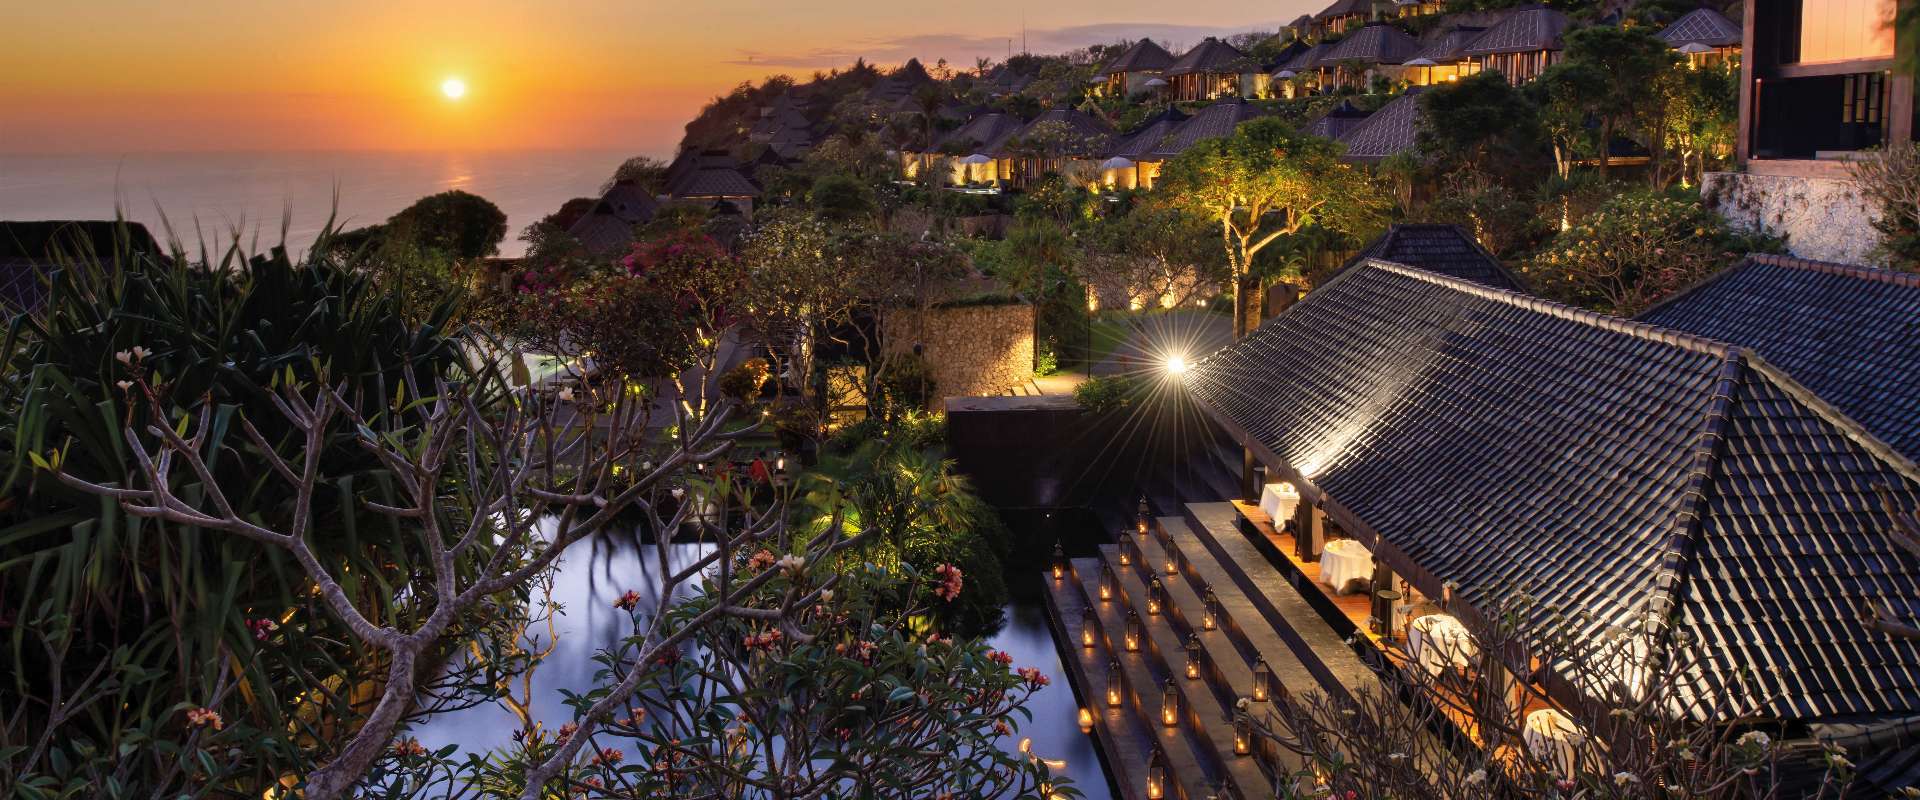 Bulgari Resort Bali - Panoramic View